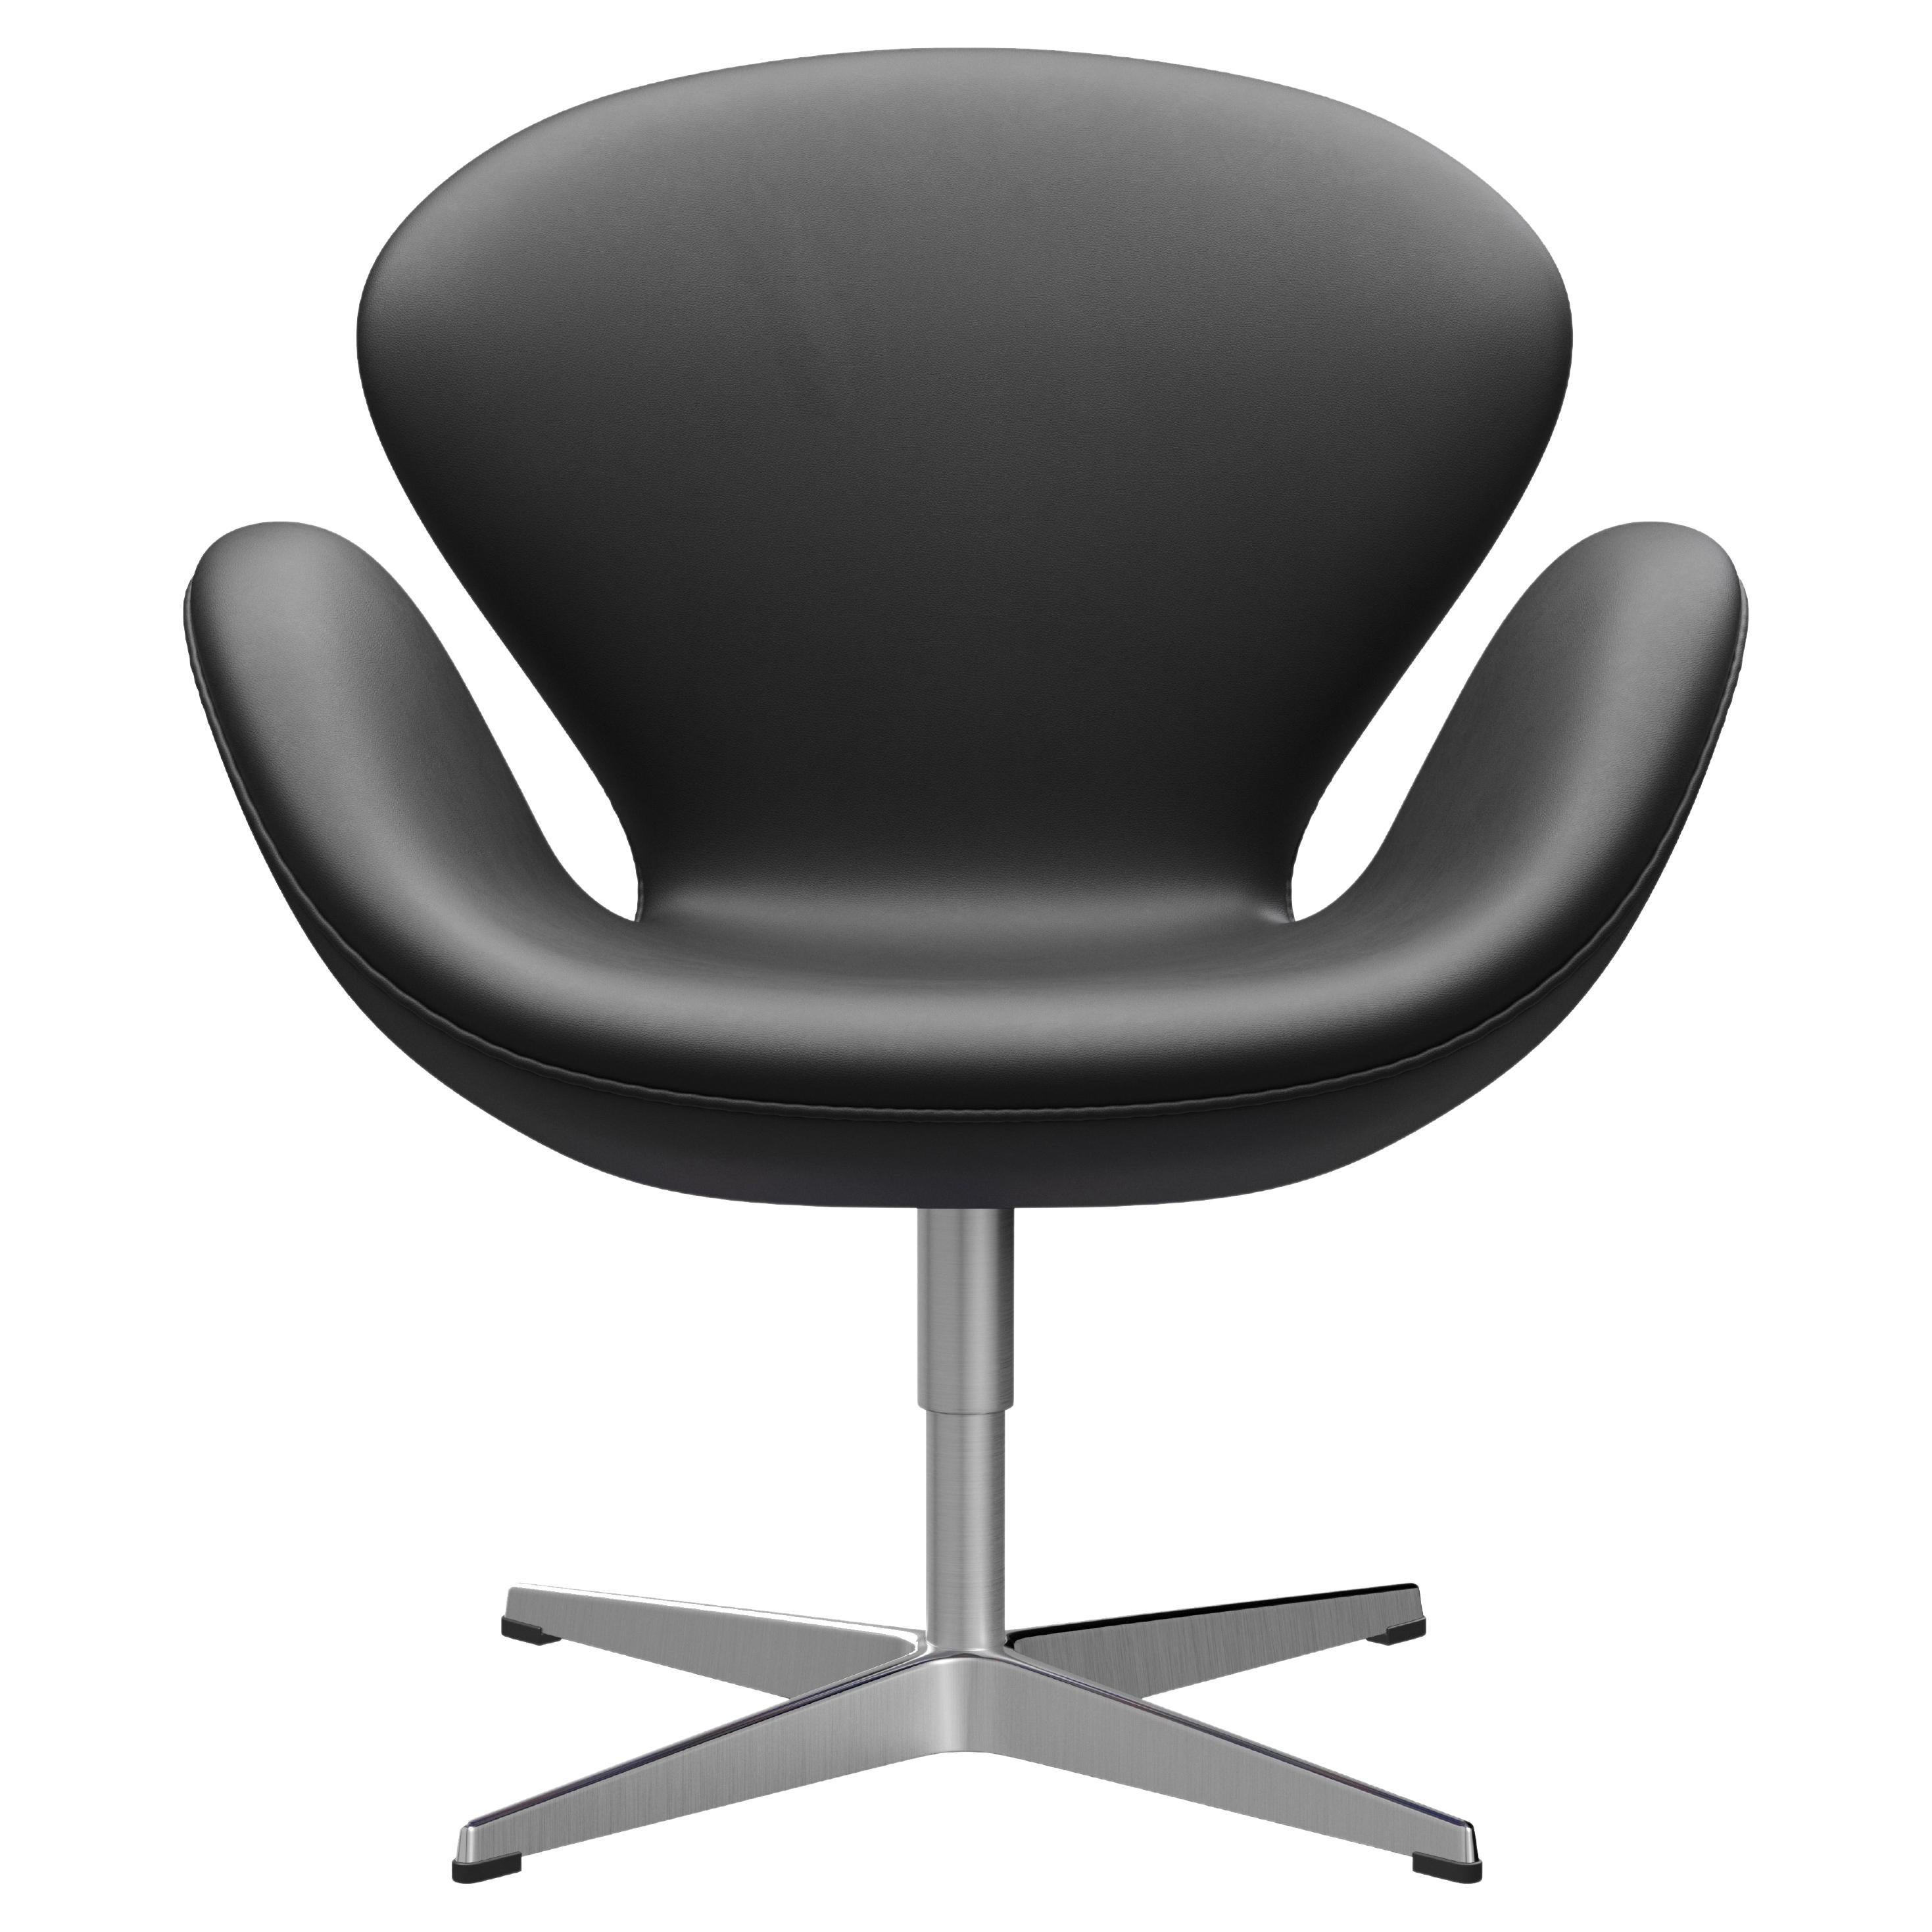 Arne Jacobsen 'Swan' Chair for Fritz Hansen in Leather Upholstery (Cat. 3)